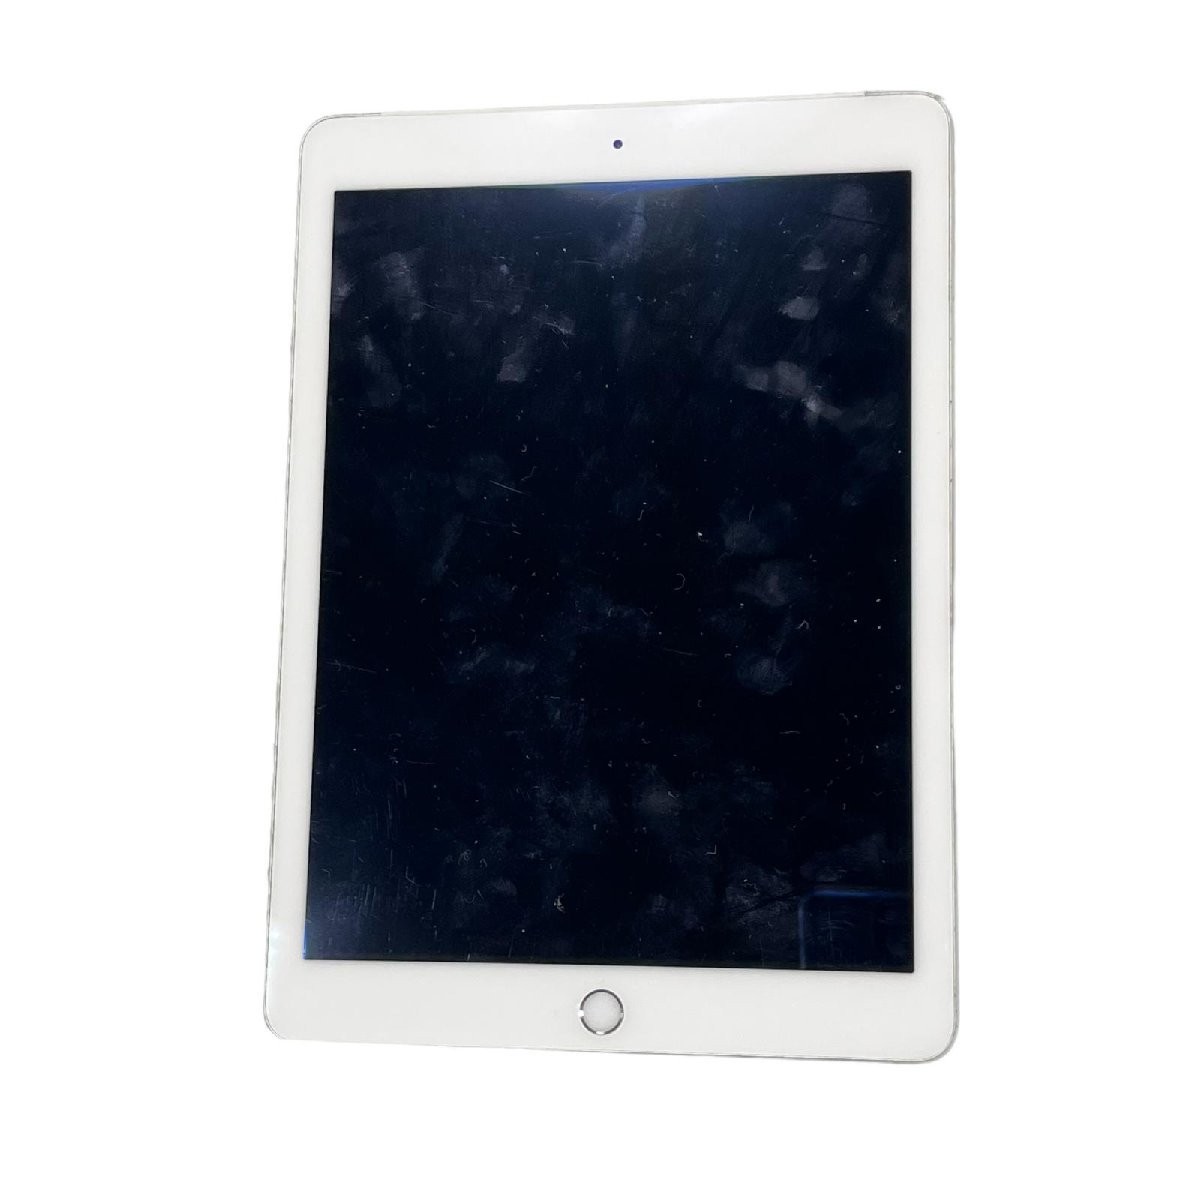 売れ筋商品 Air iPad アップル ☆Apple 2 初期化済 MGHY2J/A 64GB